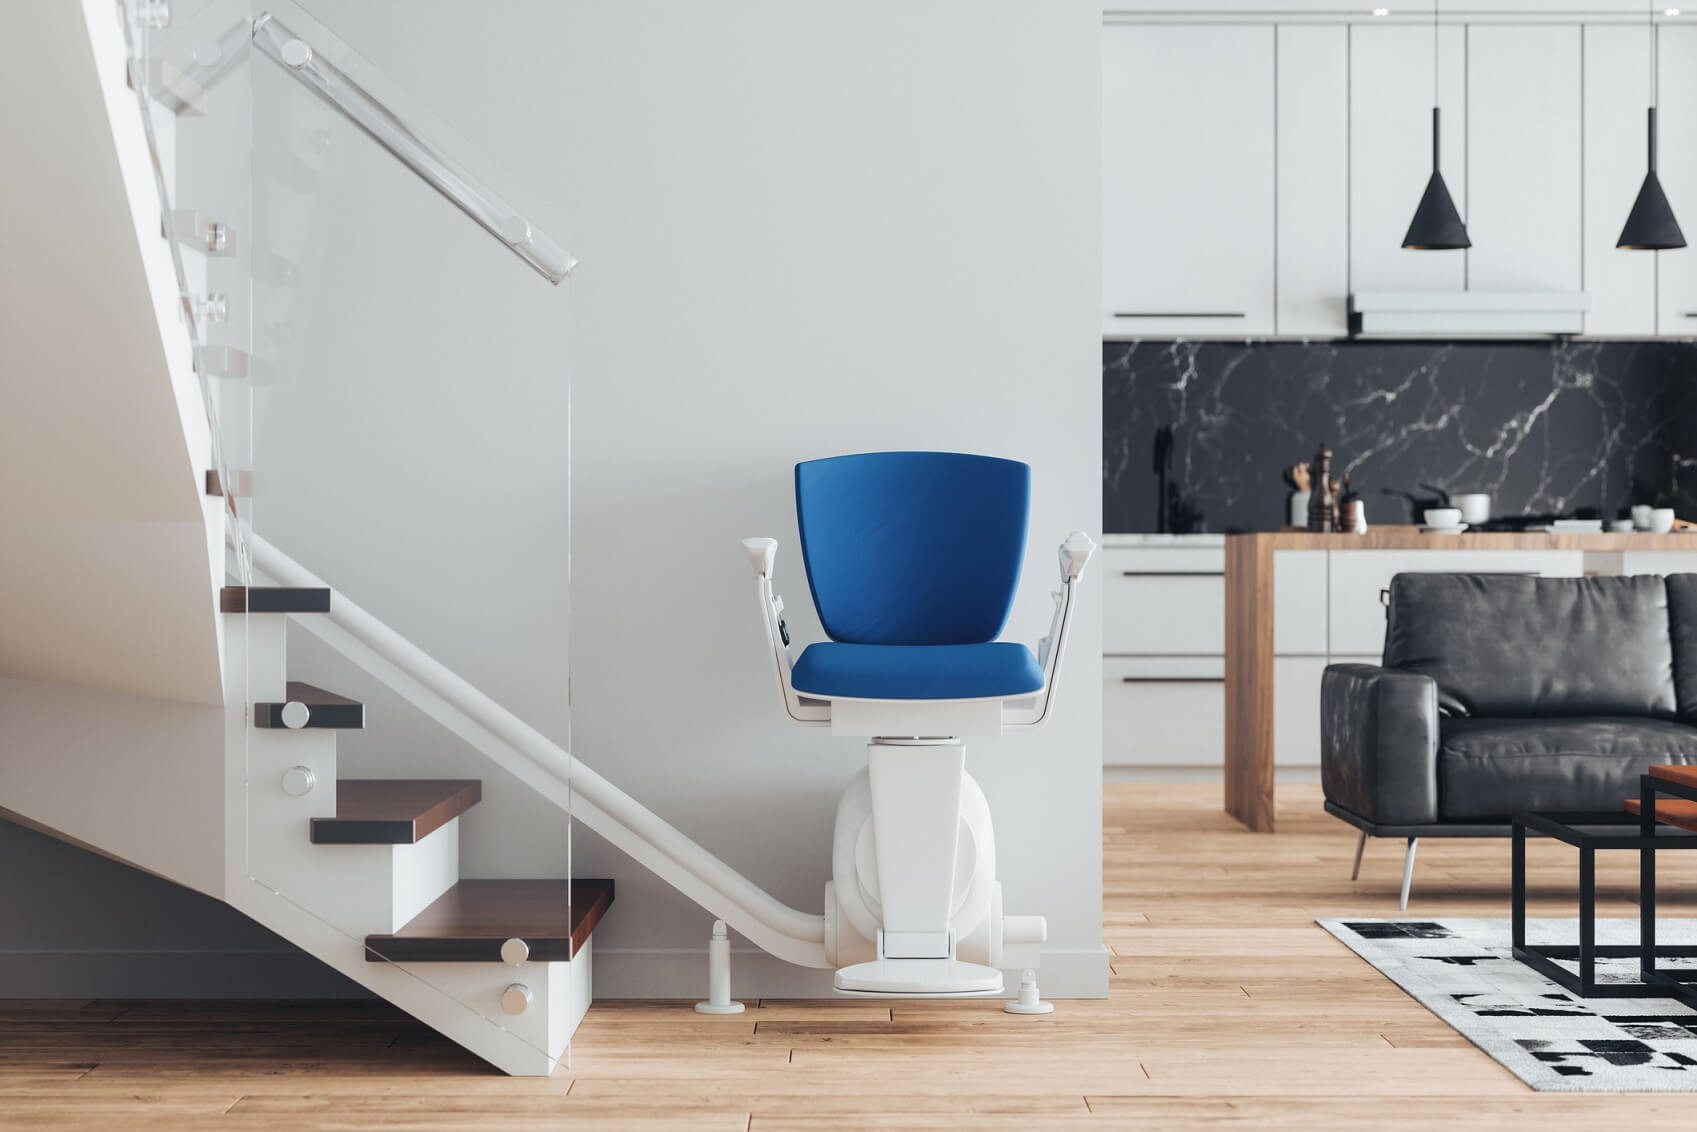 Sitzlift mit blauem Polster am Fußt einer Treppe in einem modernen Eigenheim